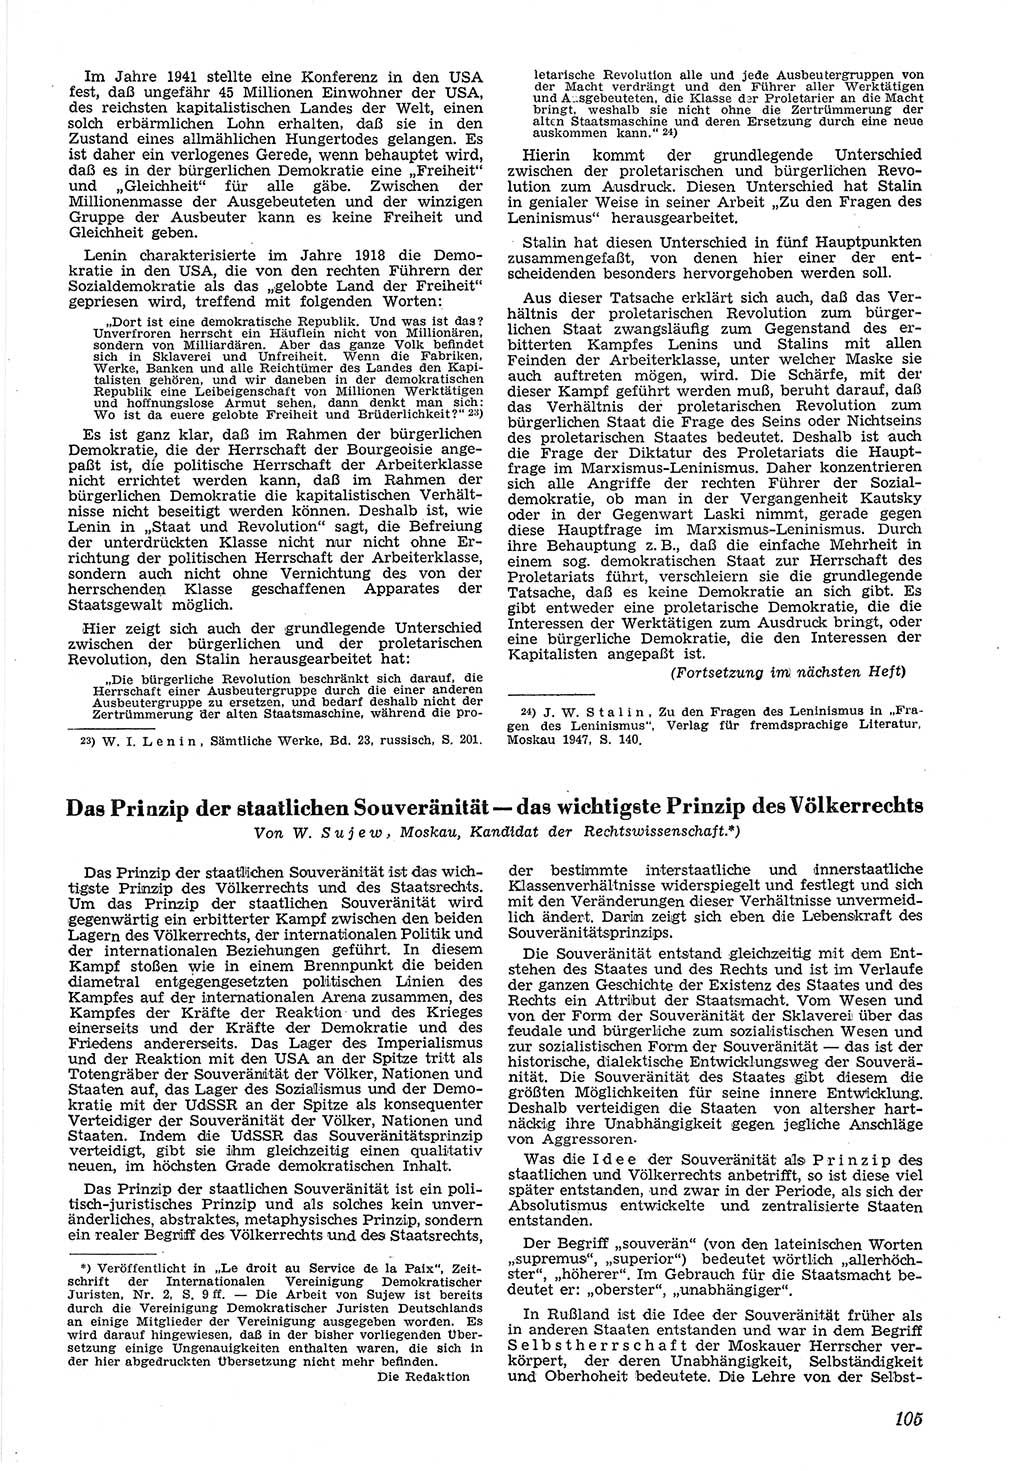 Neue Justiz (NJ), Zeitschrift für Recht und Rechtswissenschaft [Deutsche Demokratische Republik (DDR)], 5. Jahrgang 1951, Seite 105 (NJ DDR 1951, S. 105)